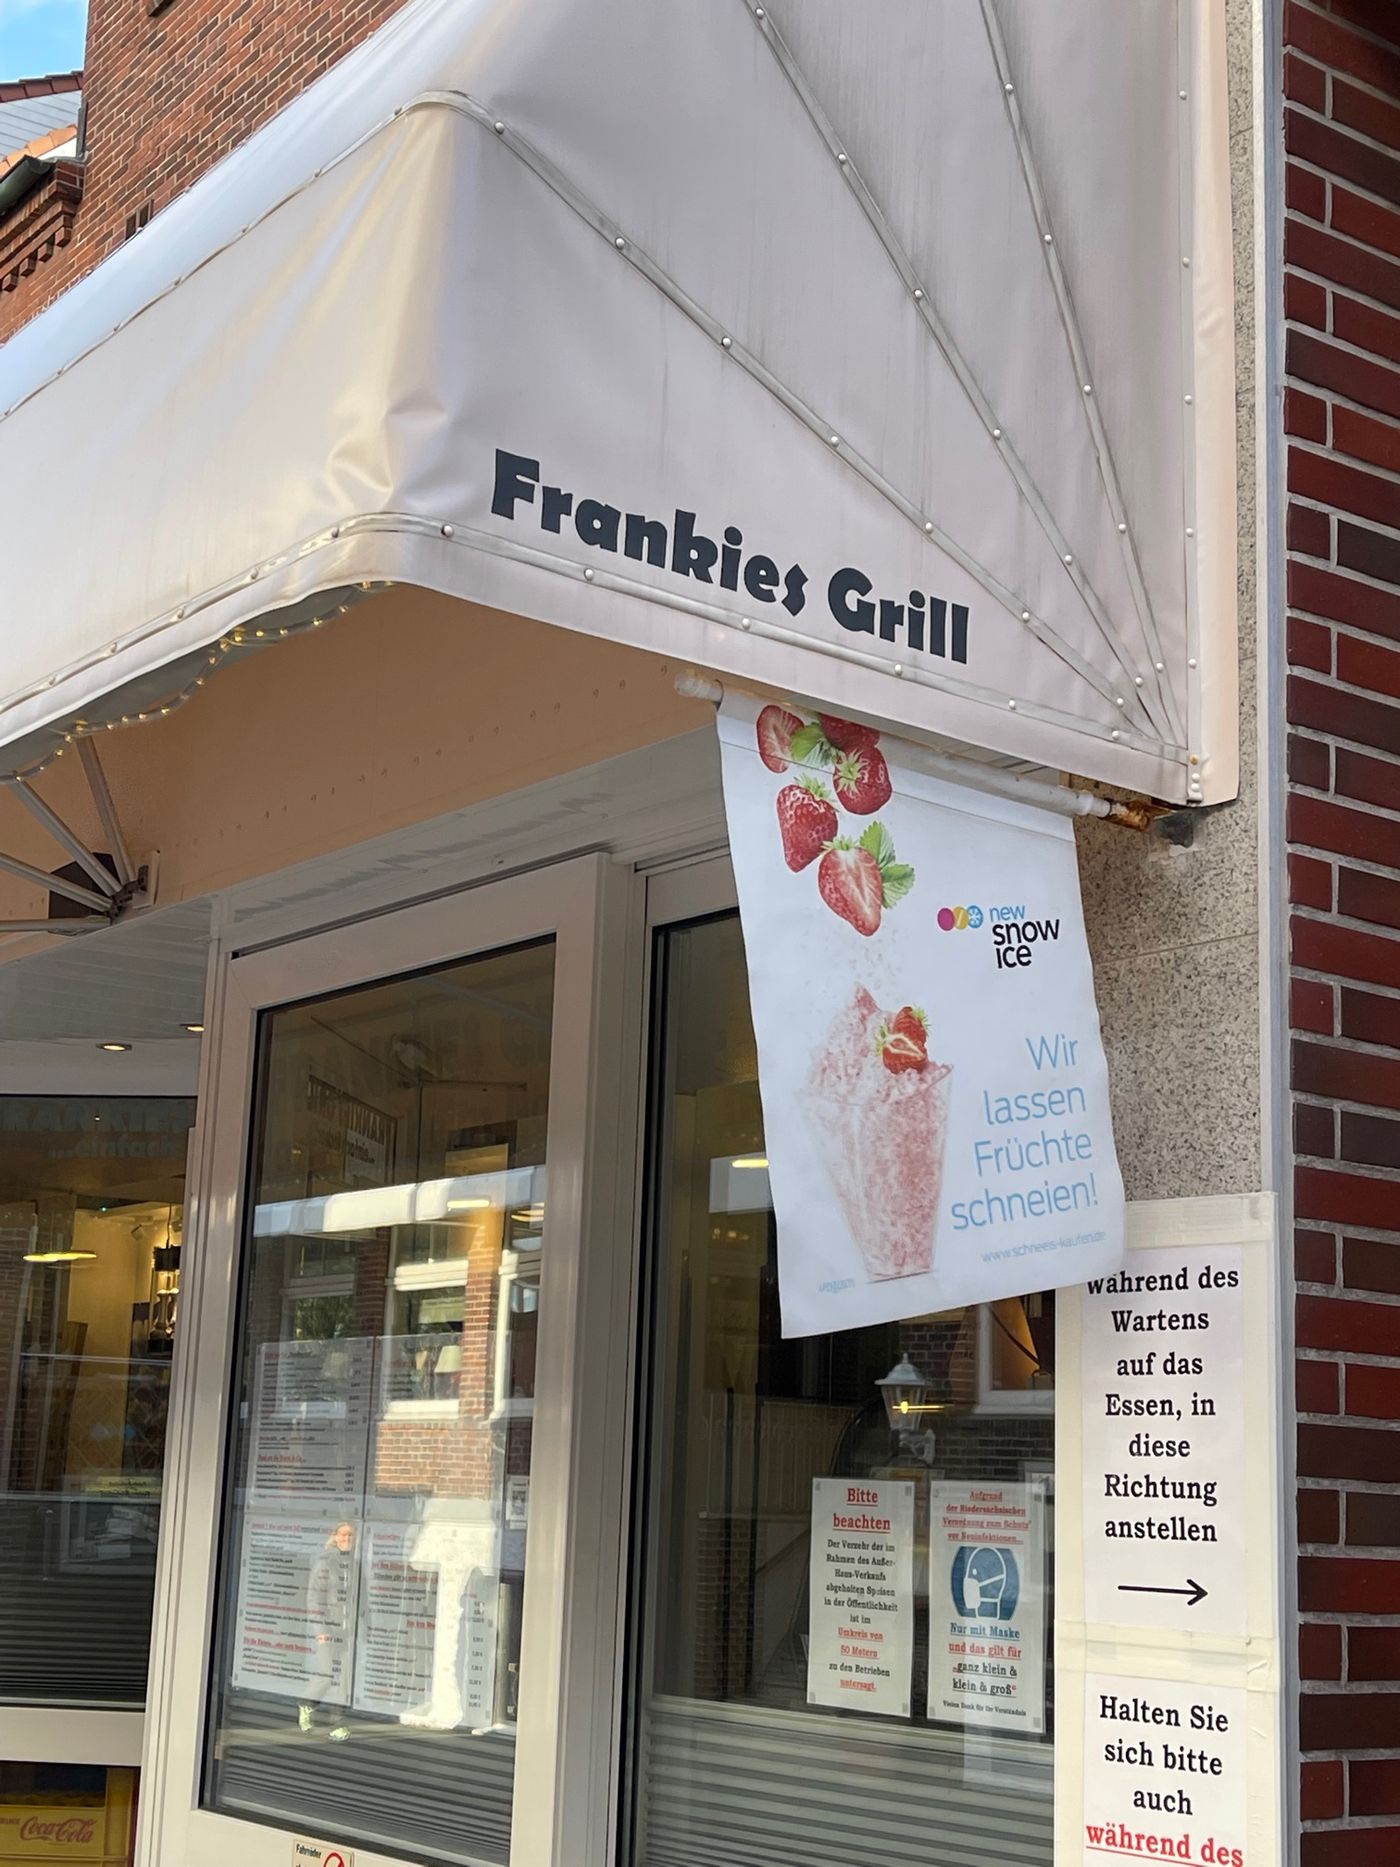 Frankies Grill